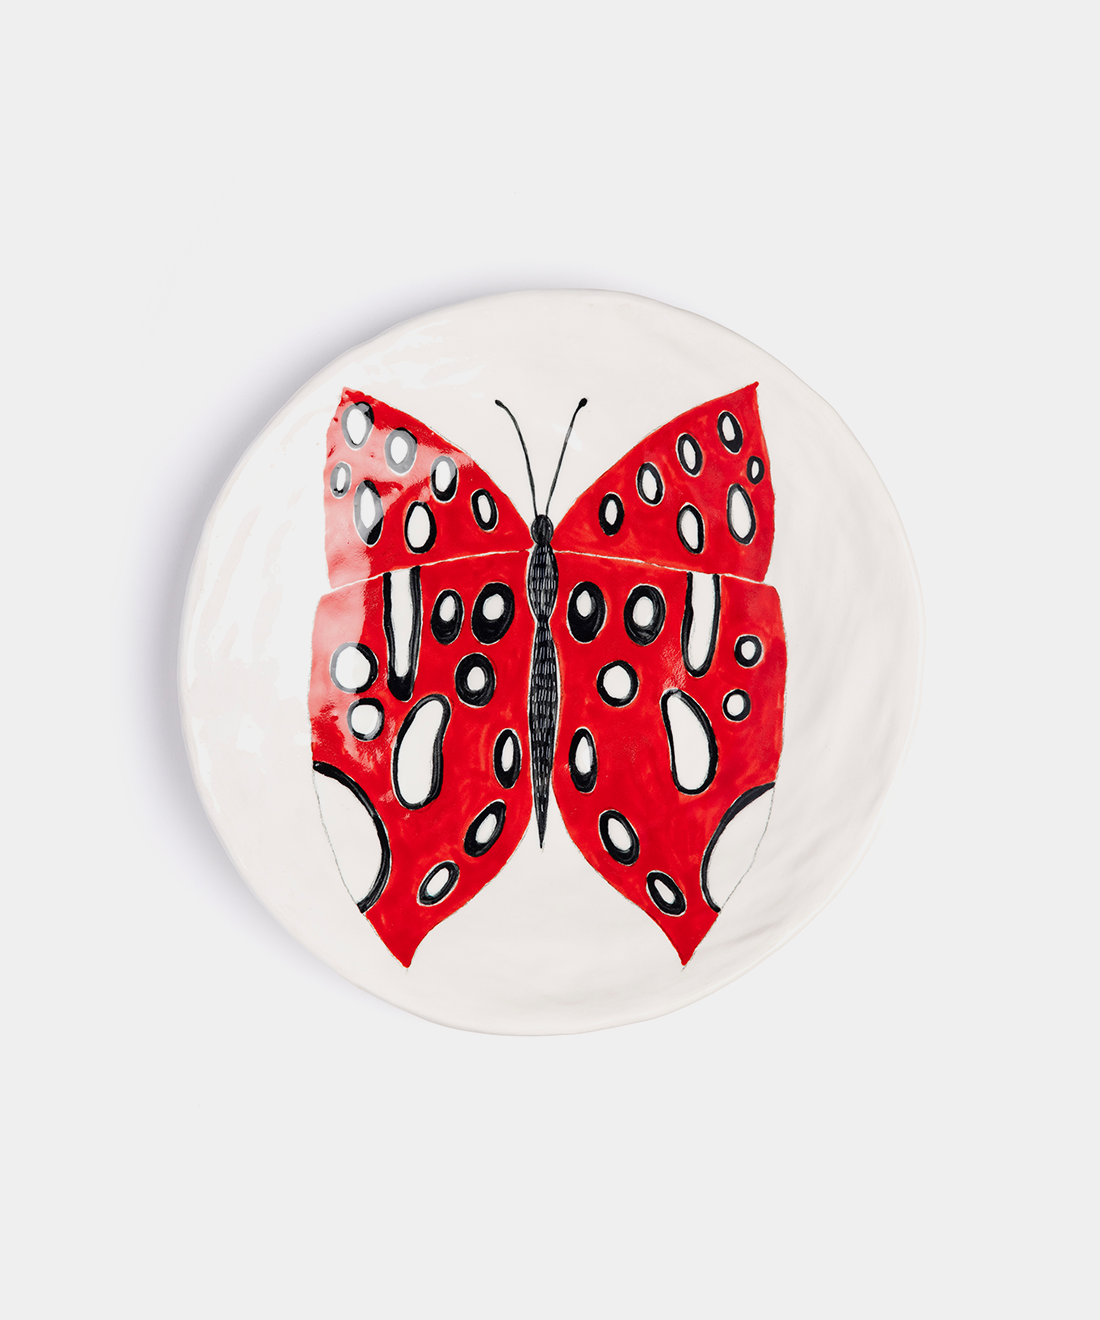 Medium Butterfly Ceramic Plates,2